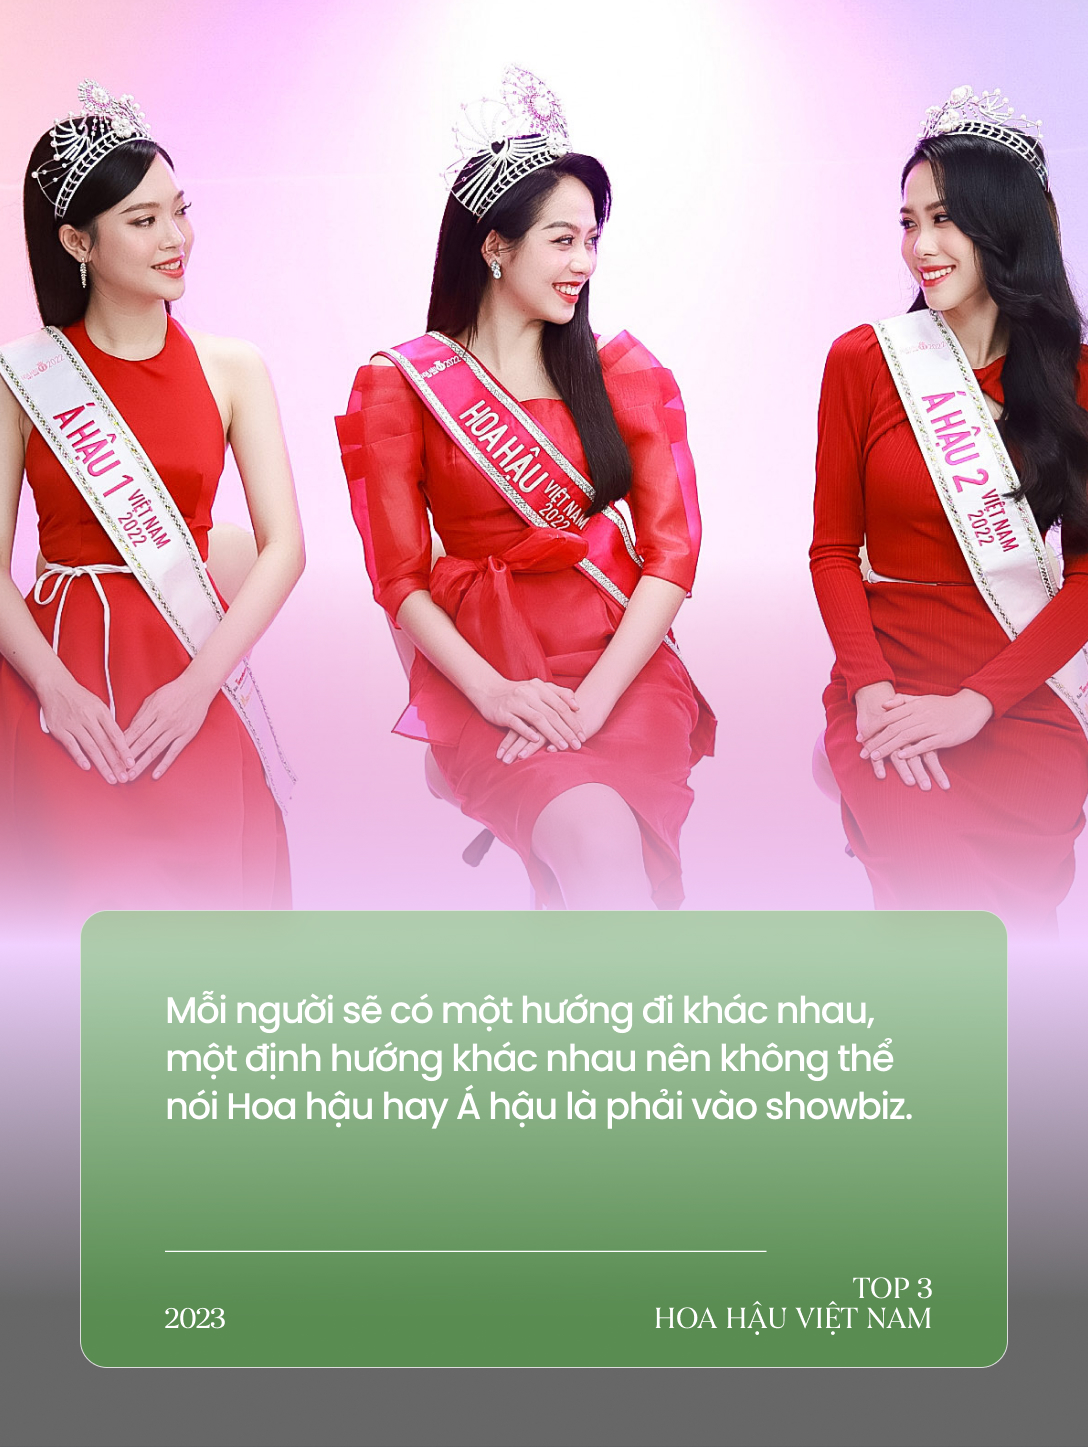 Gặp Top 3 Hoa hậu Việt Nam ngày cận Tết: Hoa hậu không chỉ cần mỗi nhan sắc; Không ai có quyền can thiệp quyết định tiến vào showbiz - Ảnh 5.